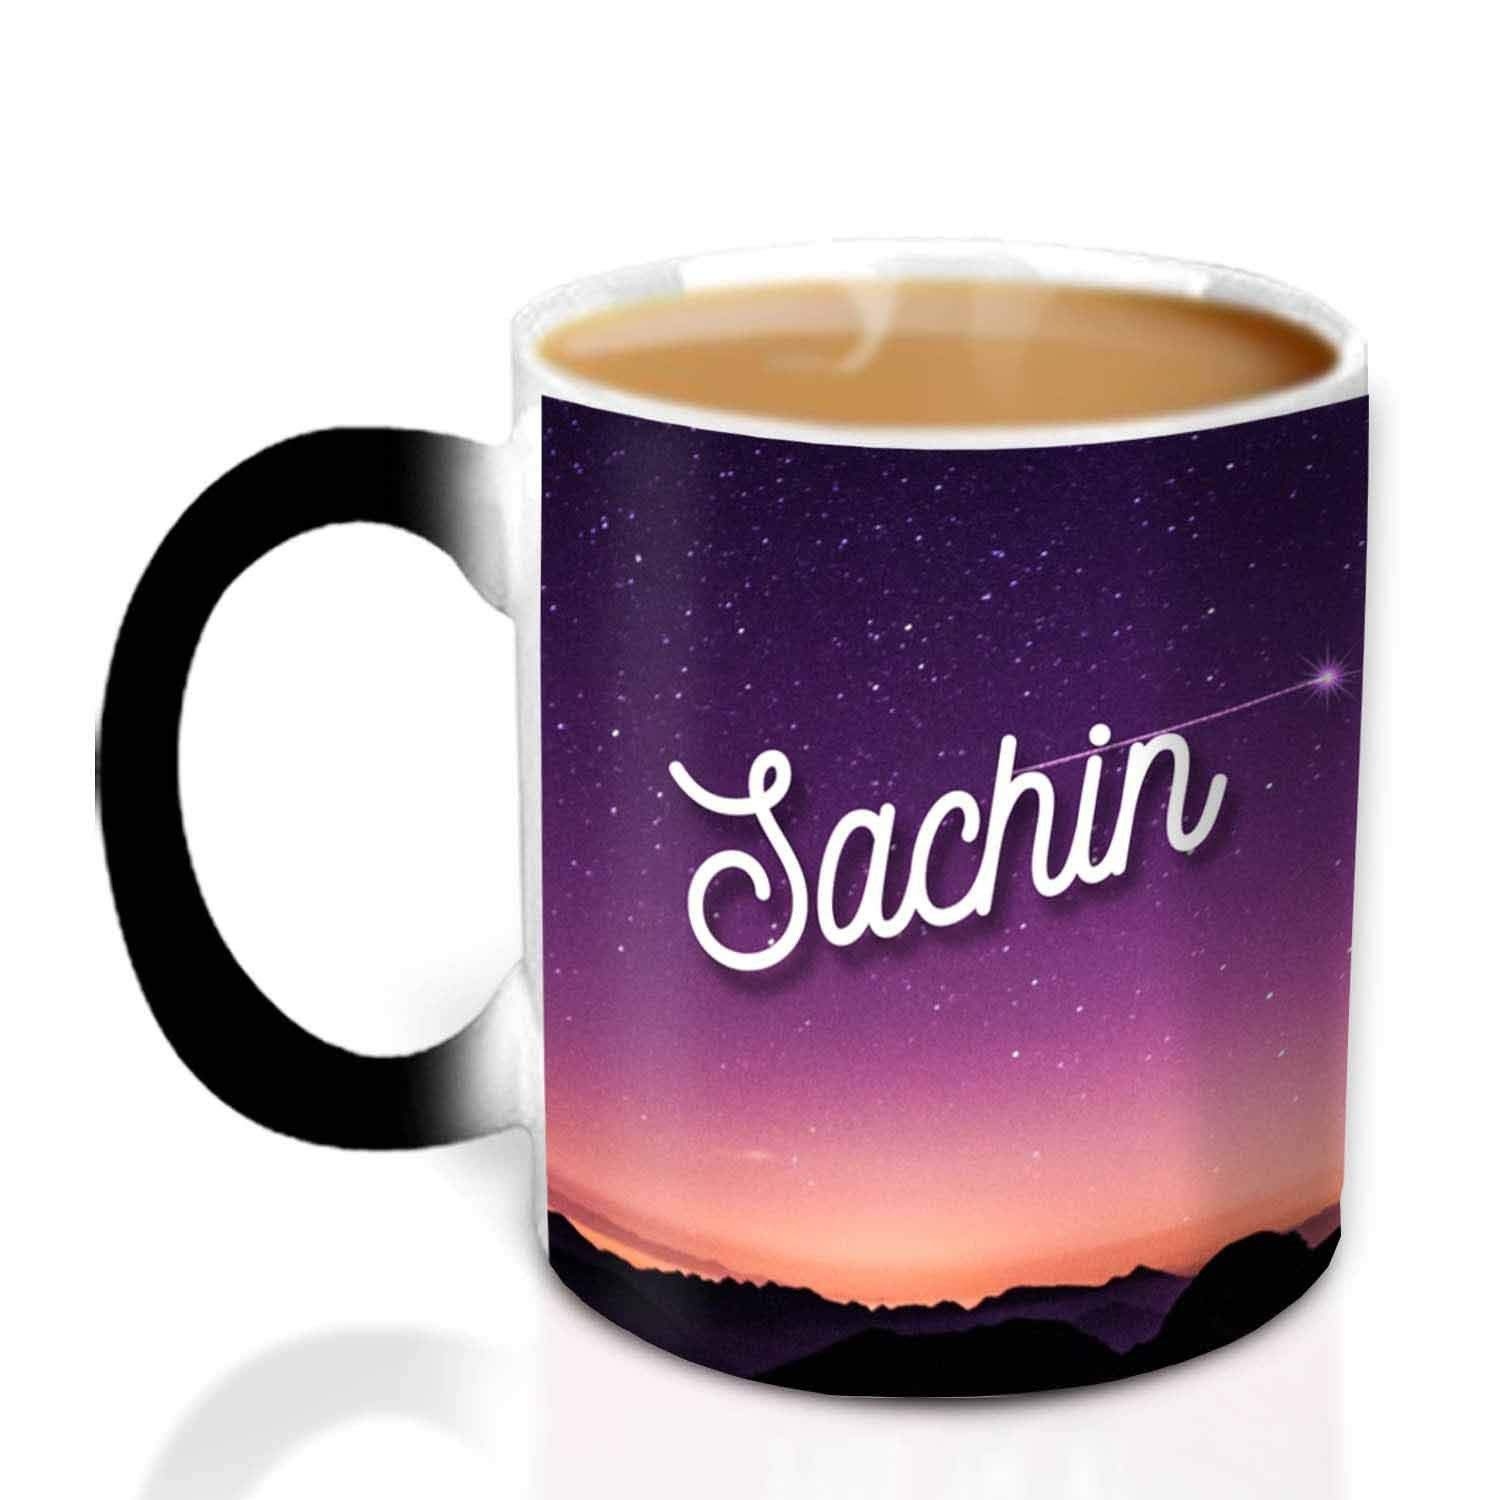 Sachin Name Printed On Cup